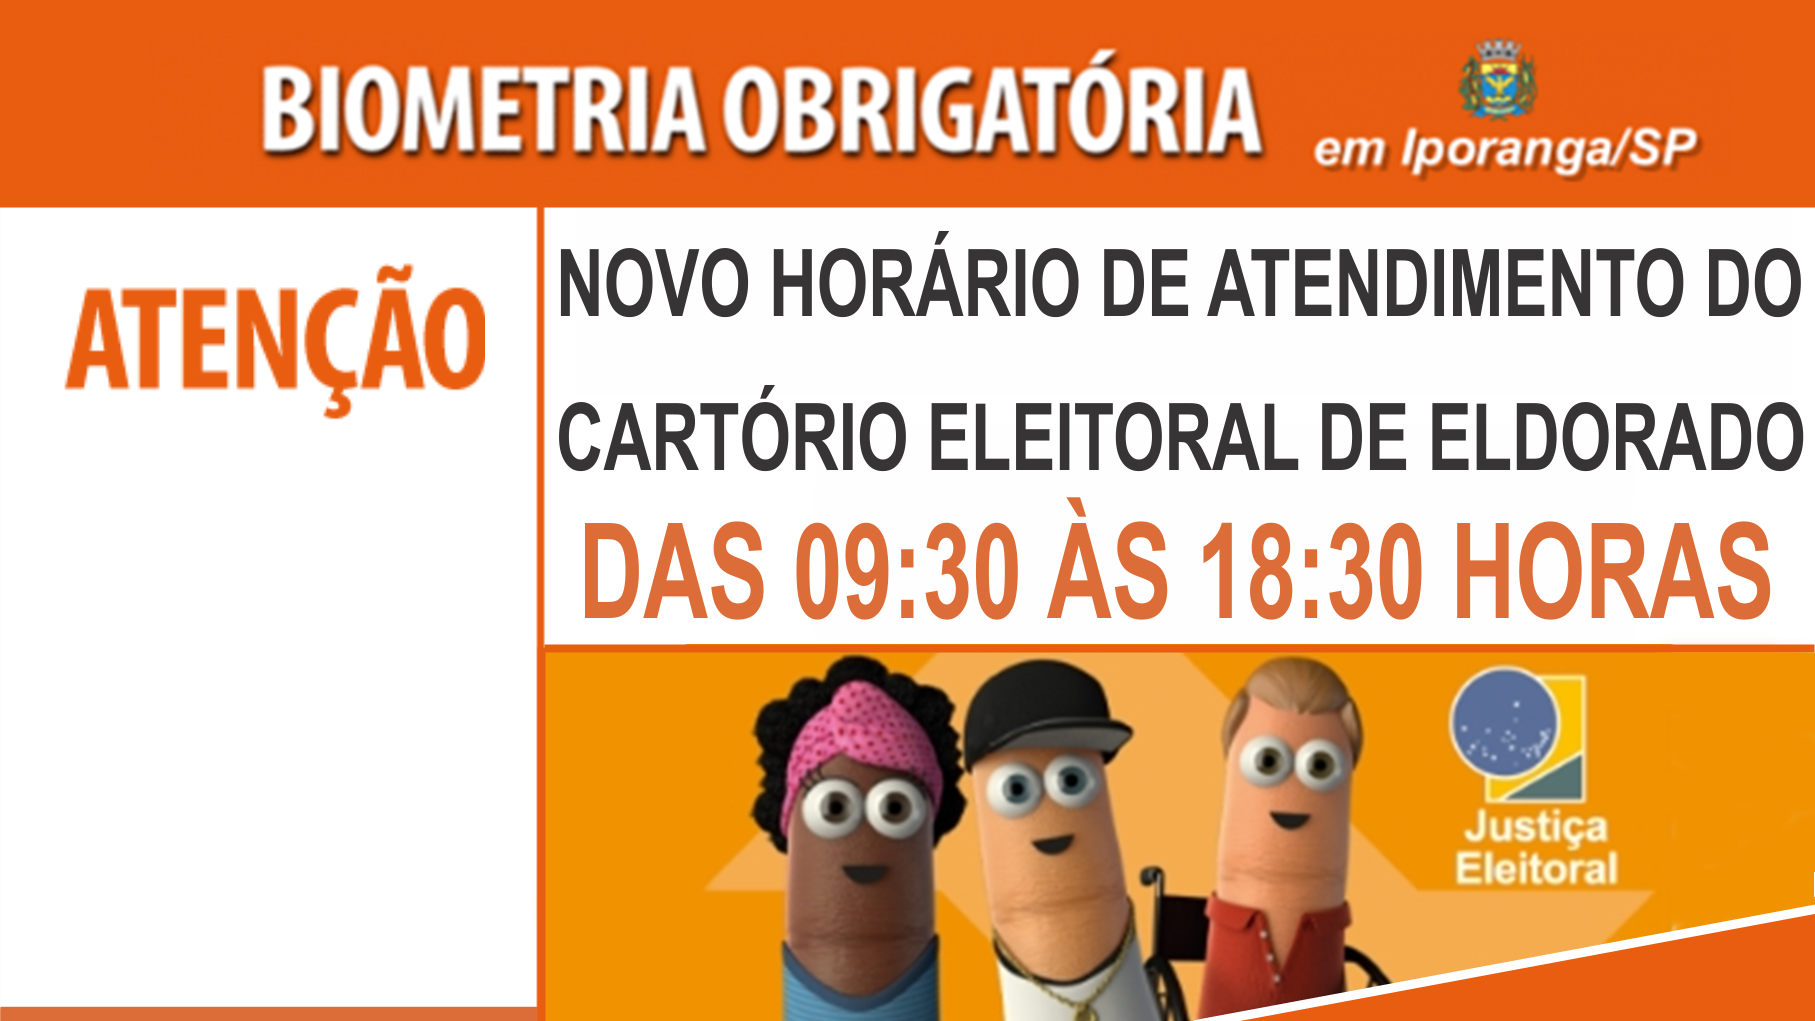 Novo horário de atendimento no Cartório Eleitoral de Eldorado/SP